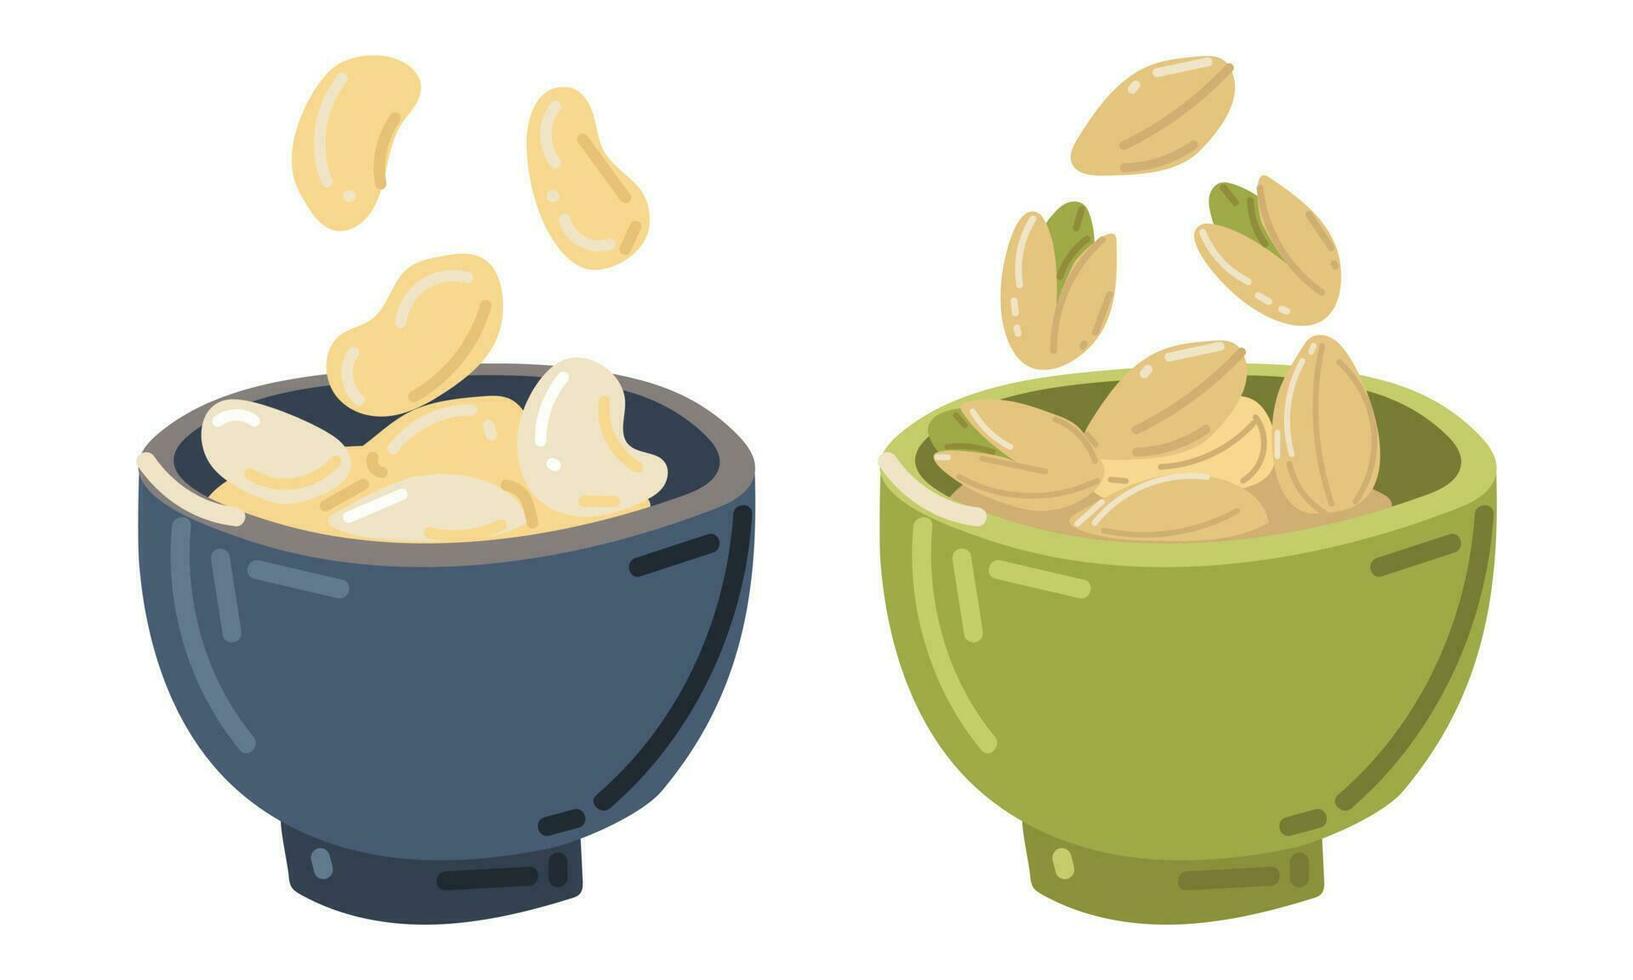 nötter separat i skålar av pistaschmandlar och cashewnötter. annorlunda nötter, en enda ikon i tecknad serie stil, vektor symbol, stock illustration. vegetarian mellanmål. meny av restauranger, kaféer